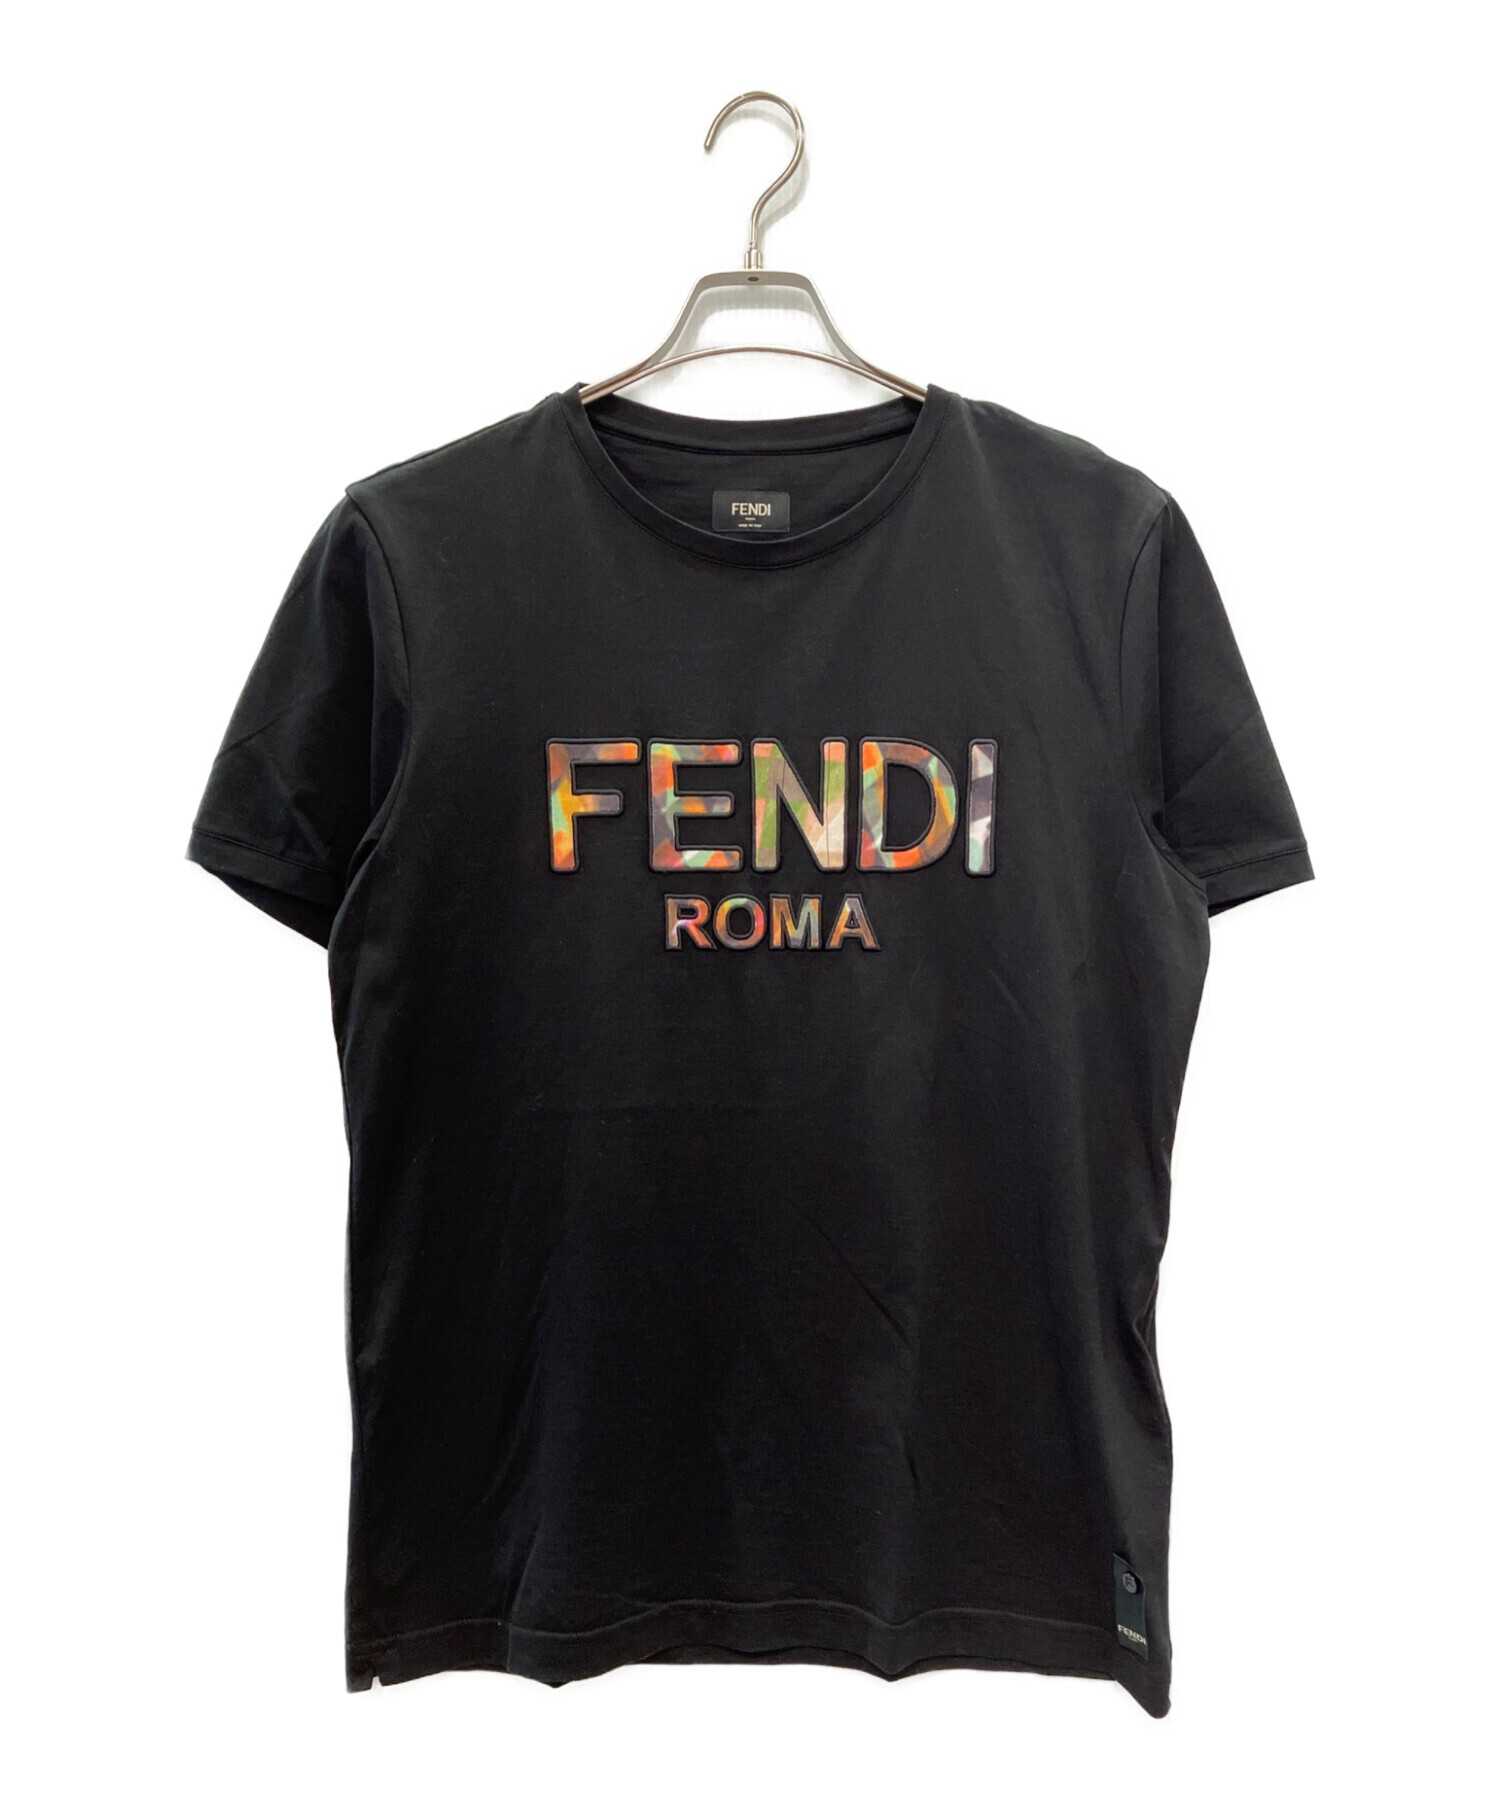 FENDI (フェンディ) Tシャツ ブラック サイズ:L